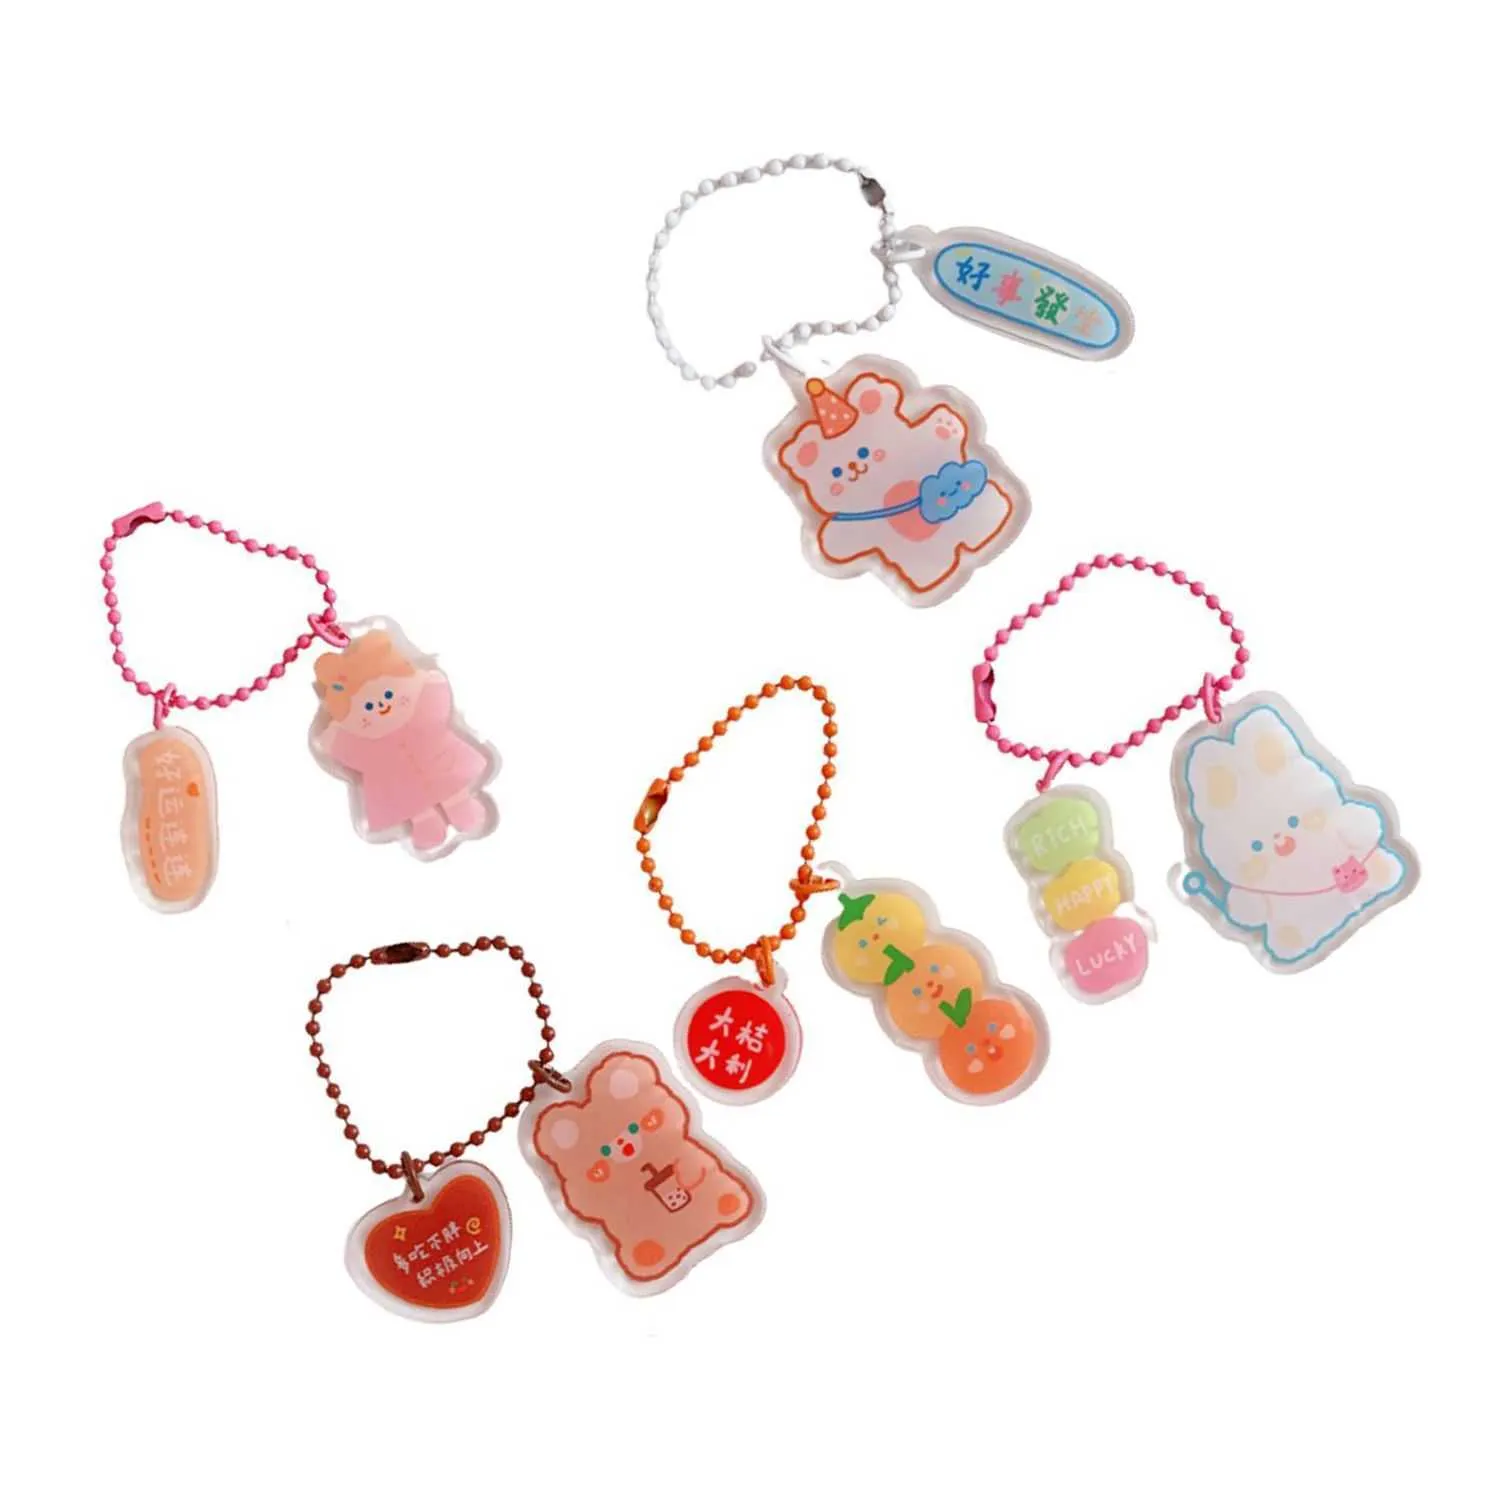 Student Cute Japanese Girlish Heart Przezroczysty Klucz Key Chain Kluczowe Klamra Wisiorek G1019